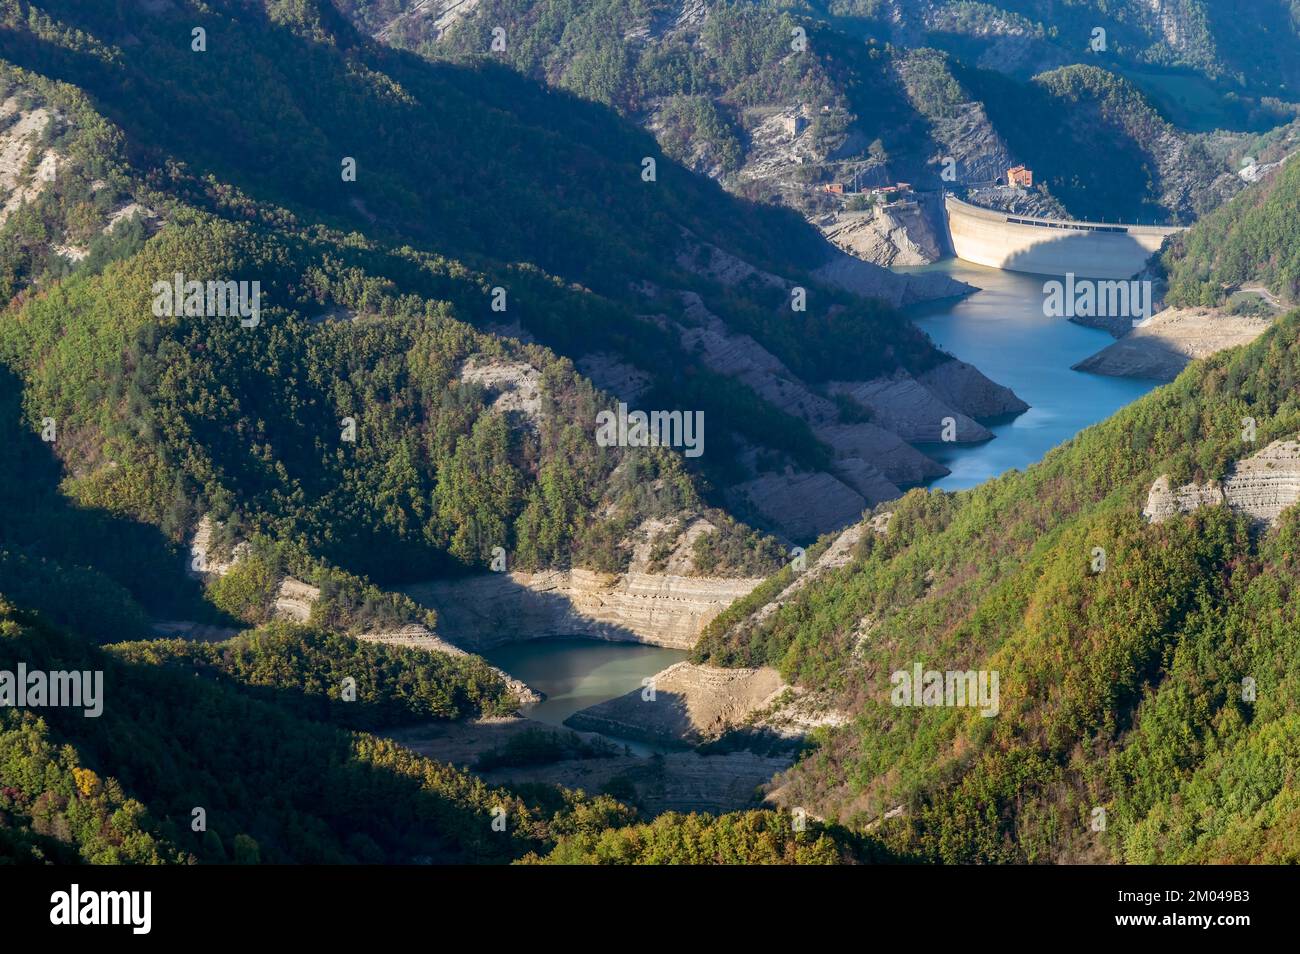 Veduta aerea panoramica del lago e della diga di Ridracoli, bagno di Romagna, Italia Foto Stock